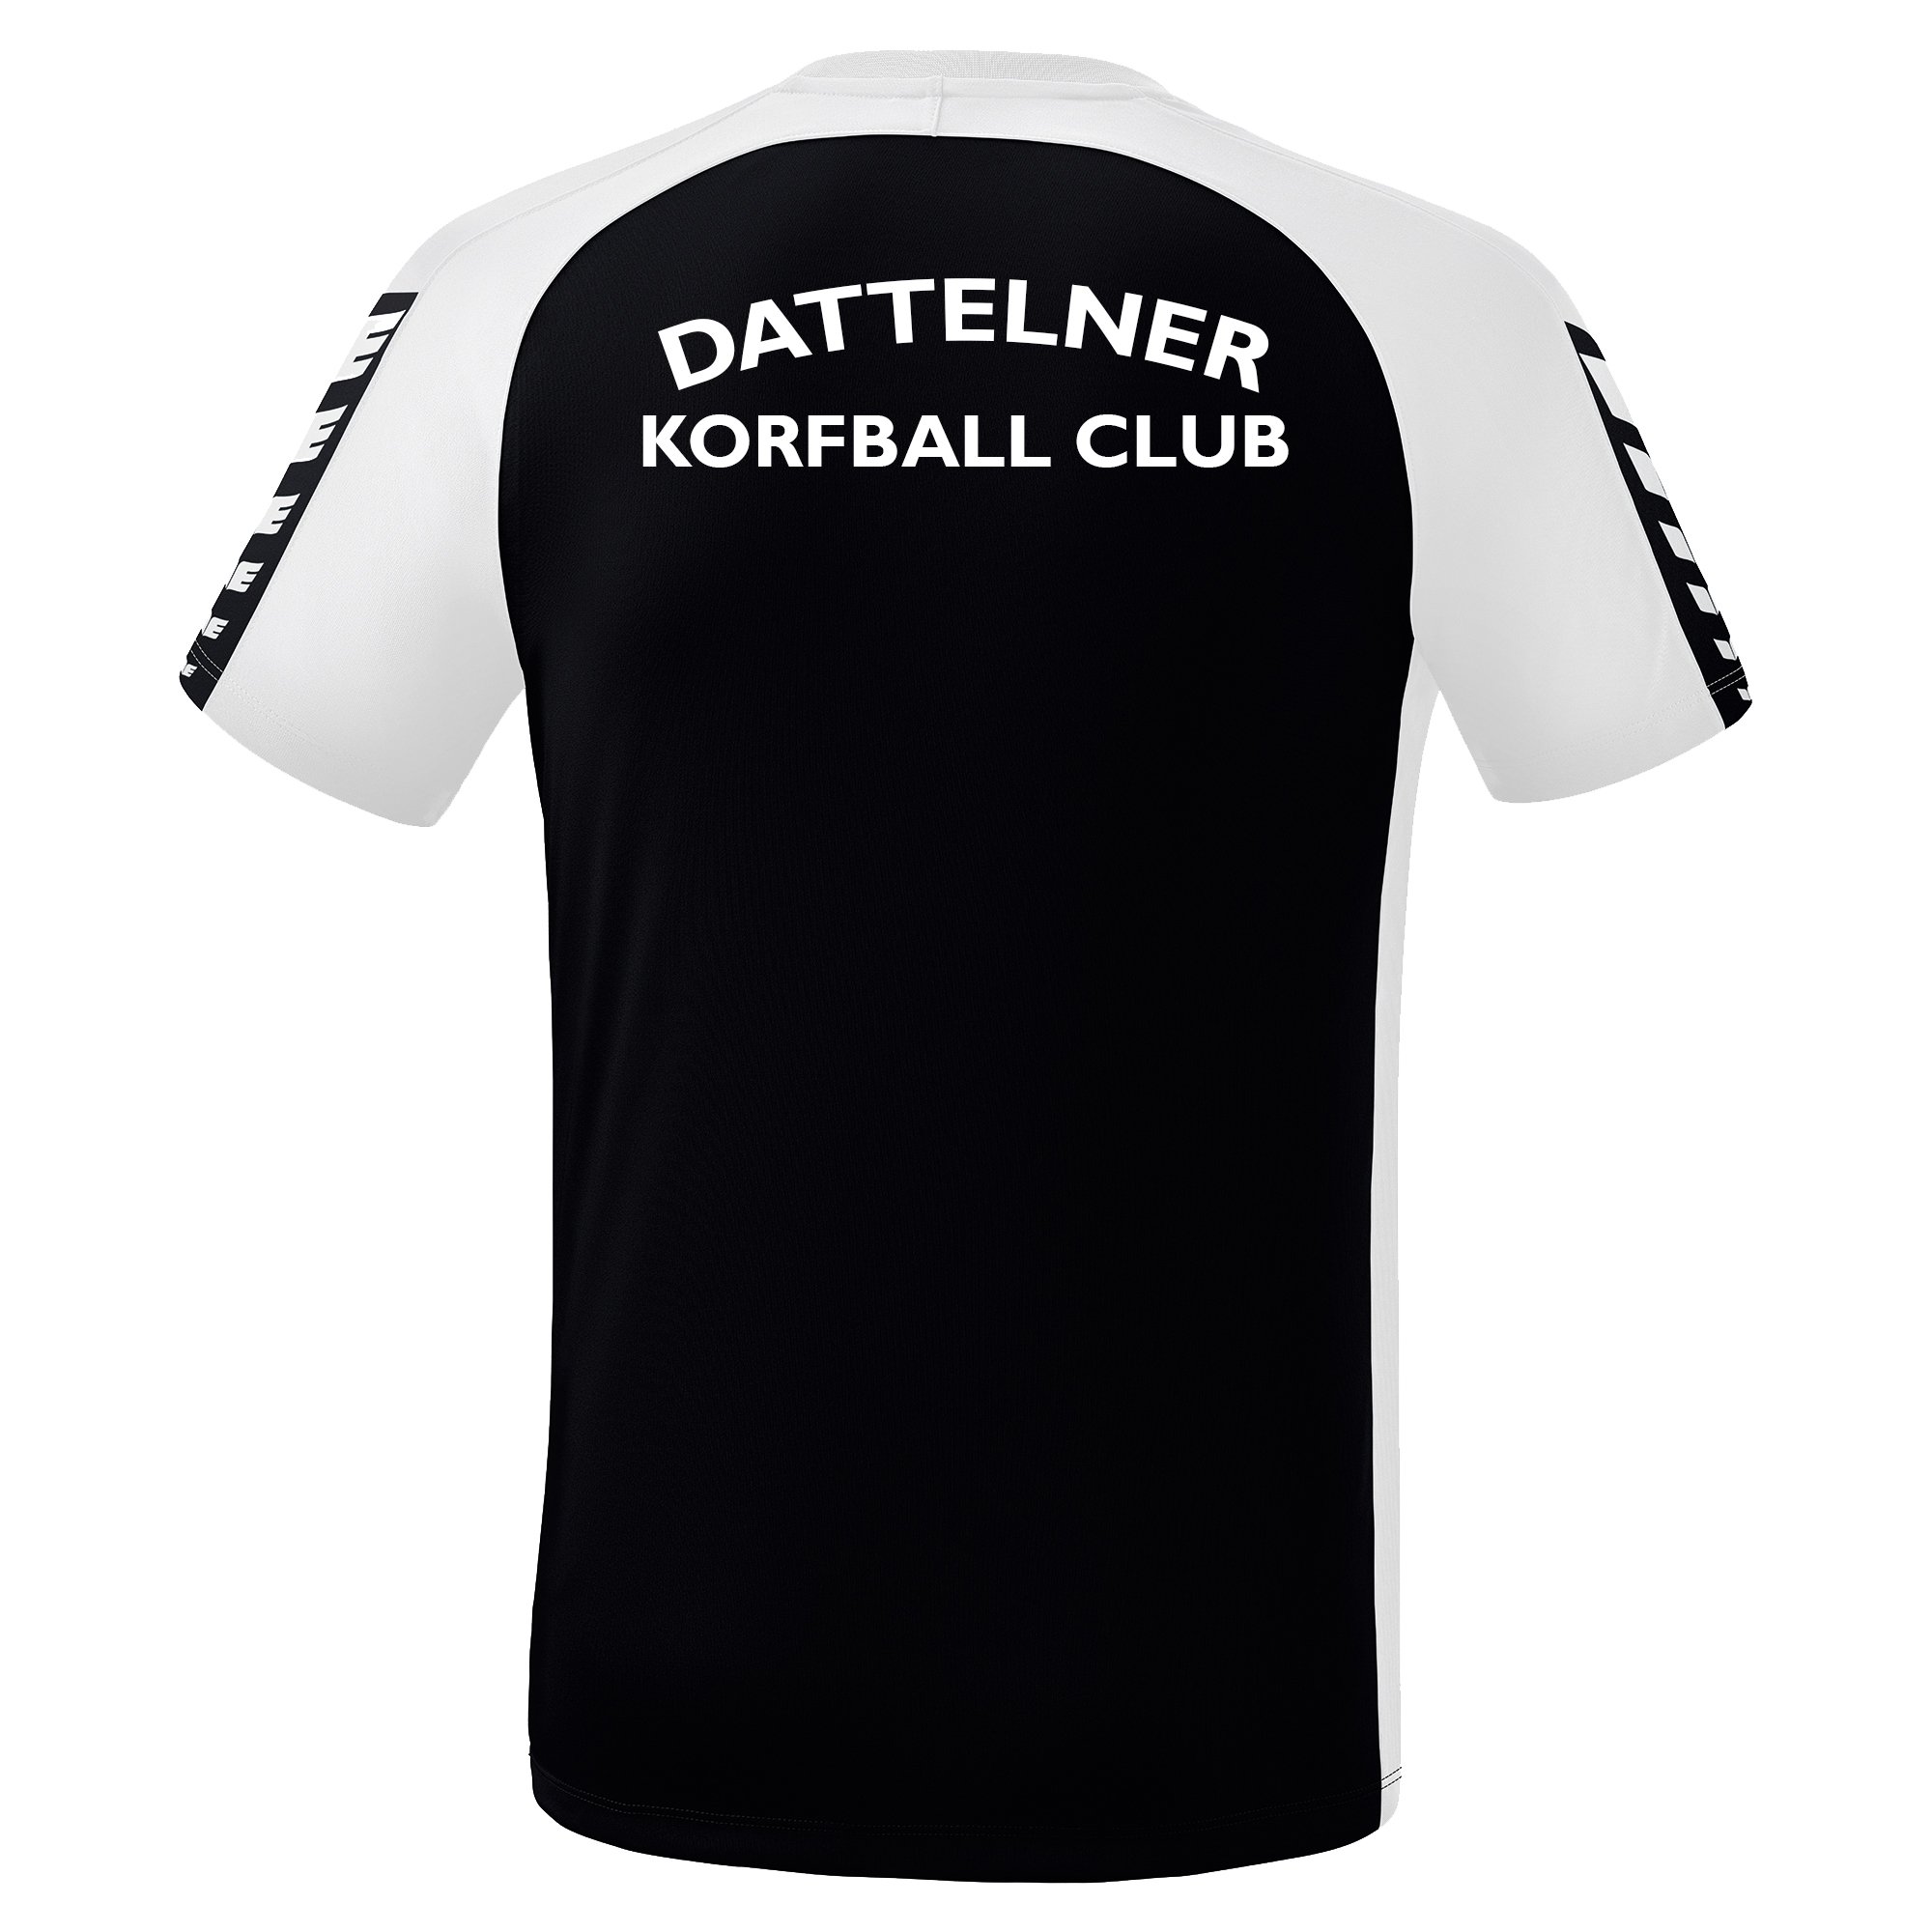 Dattelner Korfball Club T-Shirt